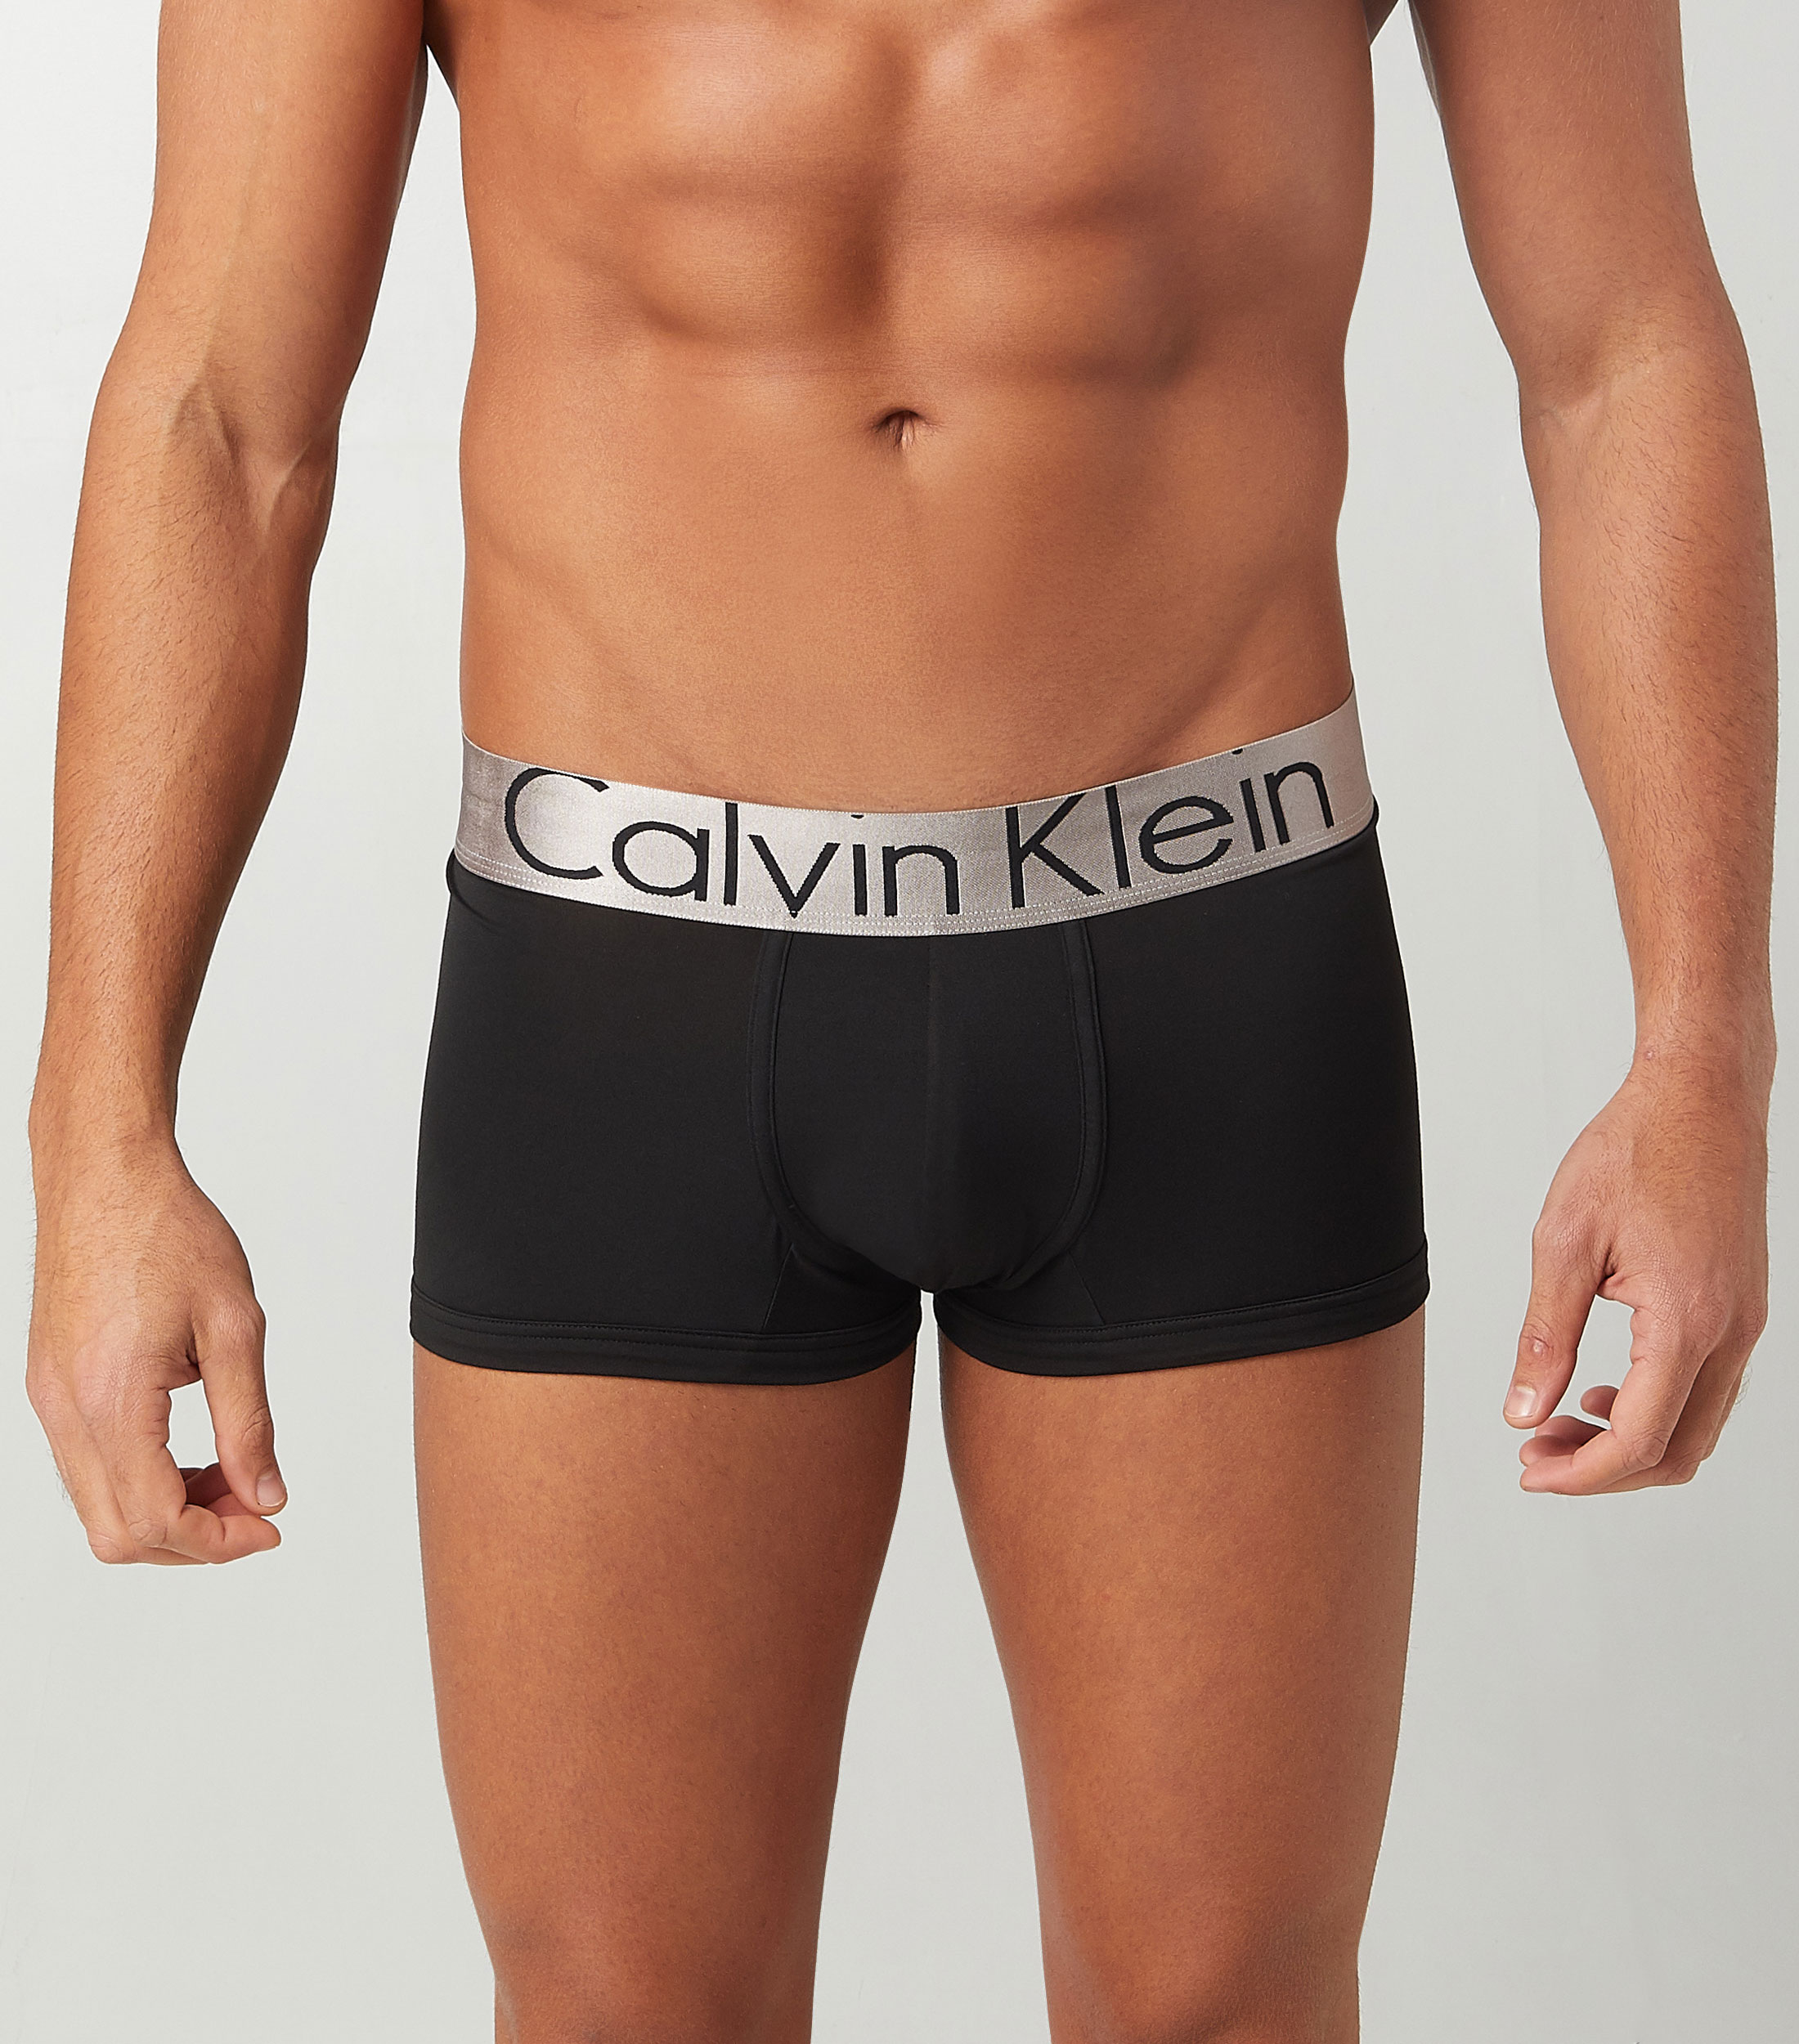  Calvin Klein Calzoncillos bóxer clásicos de algodón para hombre  (3 unidades), Negro, oliva oscuro, rosa ceniza, gris jaspeado Wbs : Ropa,  Zapatos y Joyería